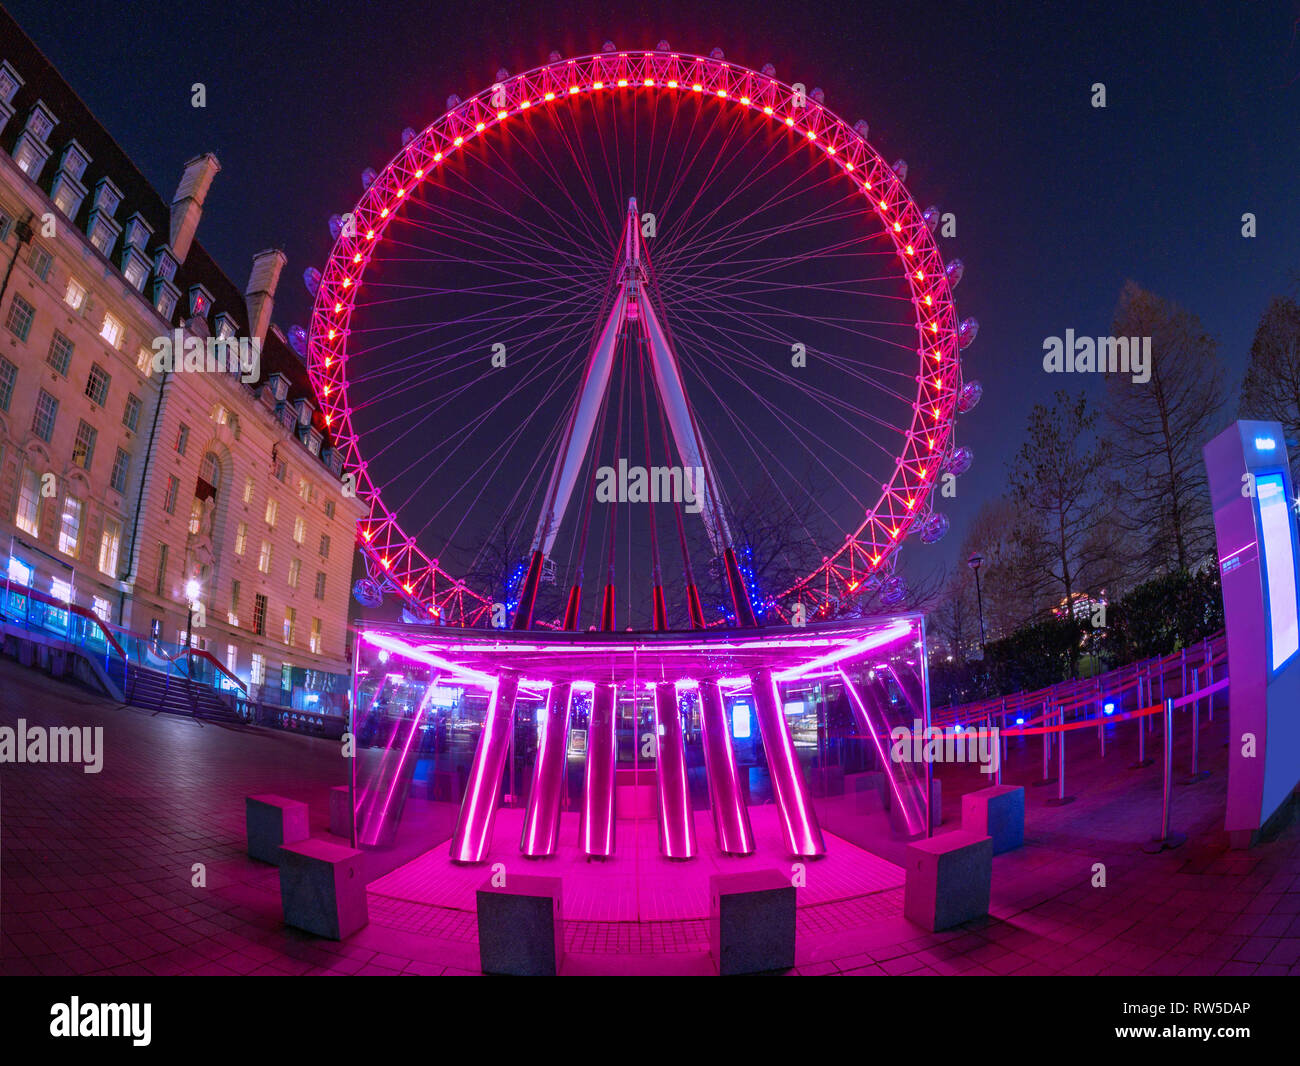 Londres, Angleterre, Royaume-Uni - 27 Février 2019 : scène de nuit avec large vue sur la célèbre London Eye contre le ciel plein d'étoiles, illuminé la nuit Banque D'Images